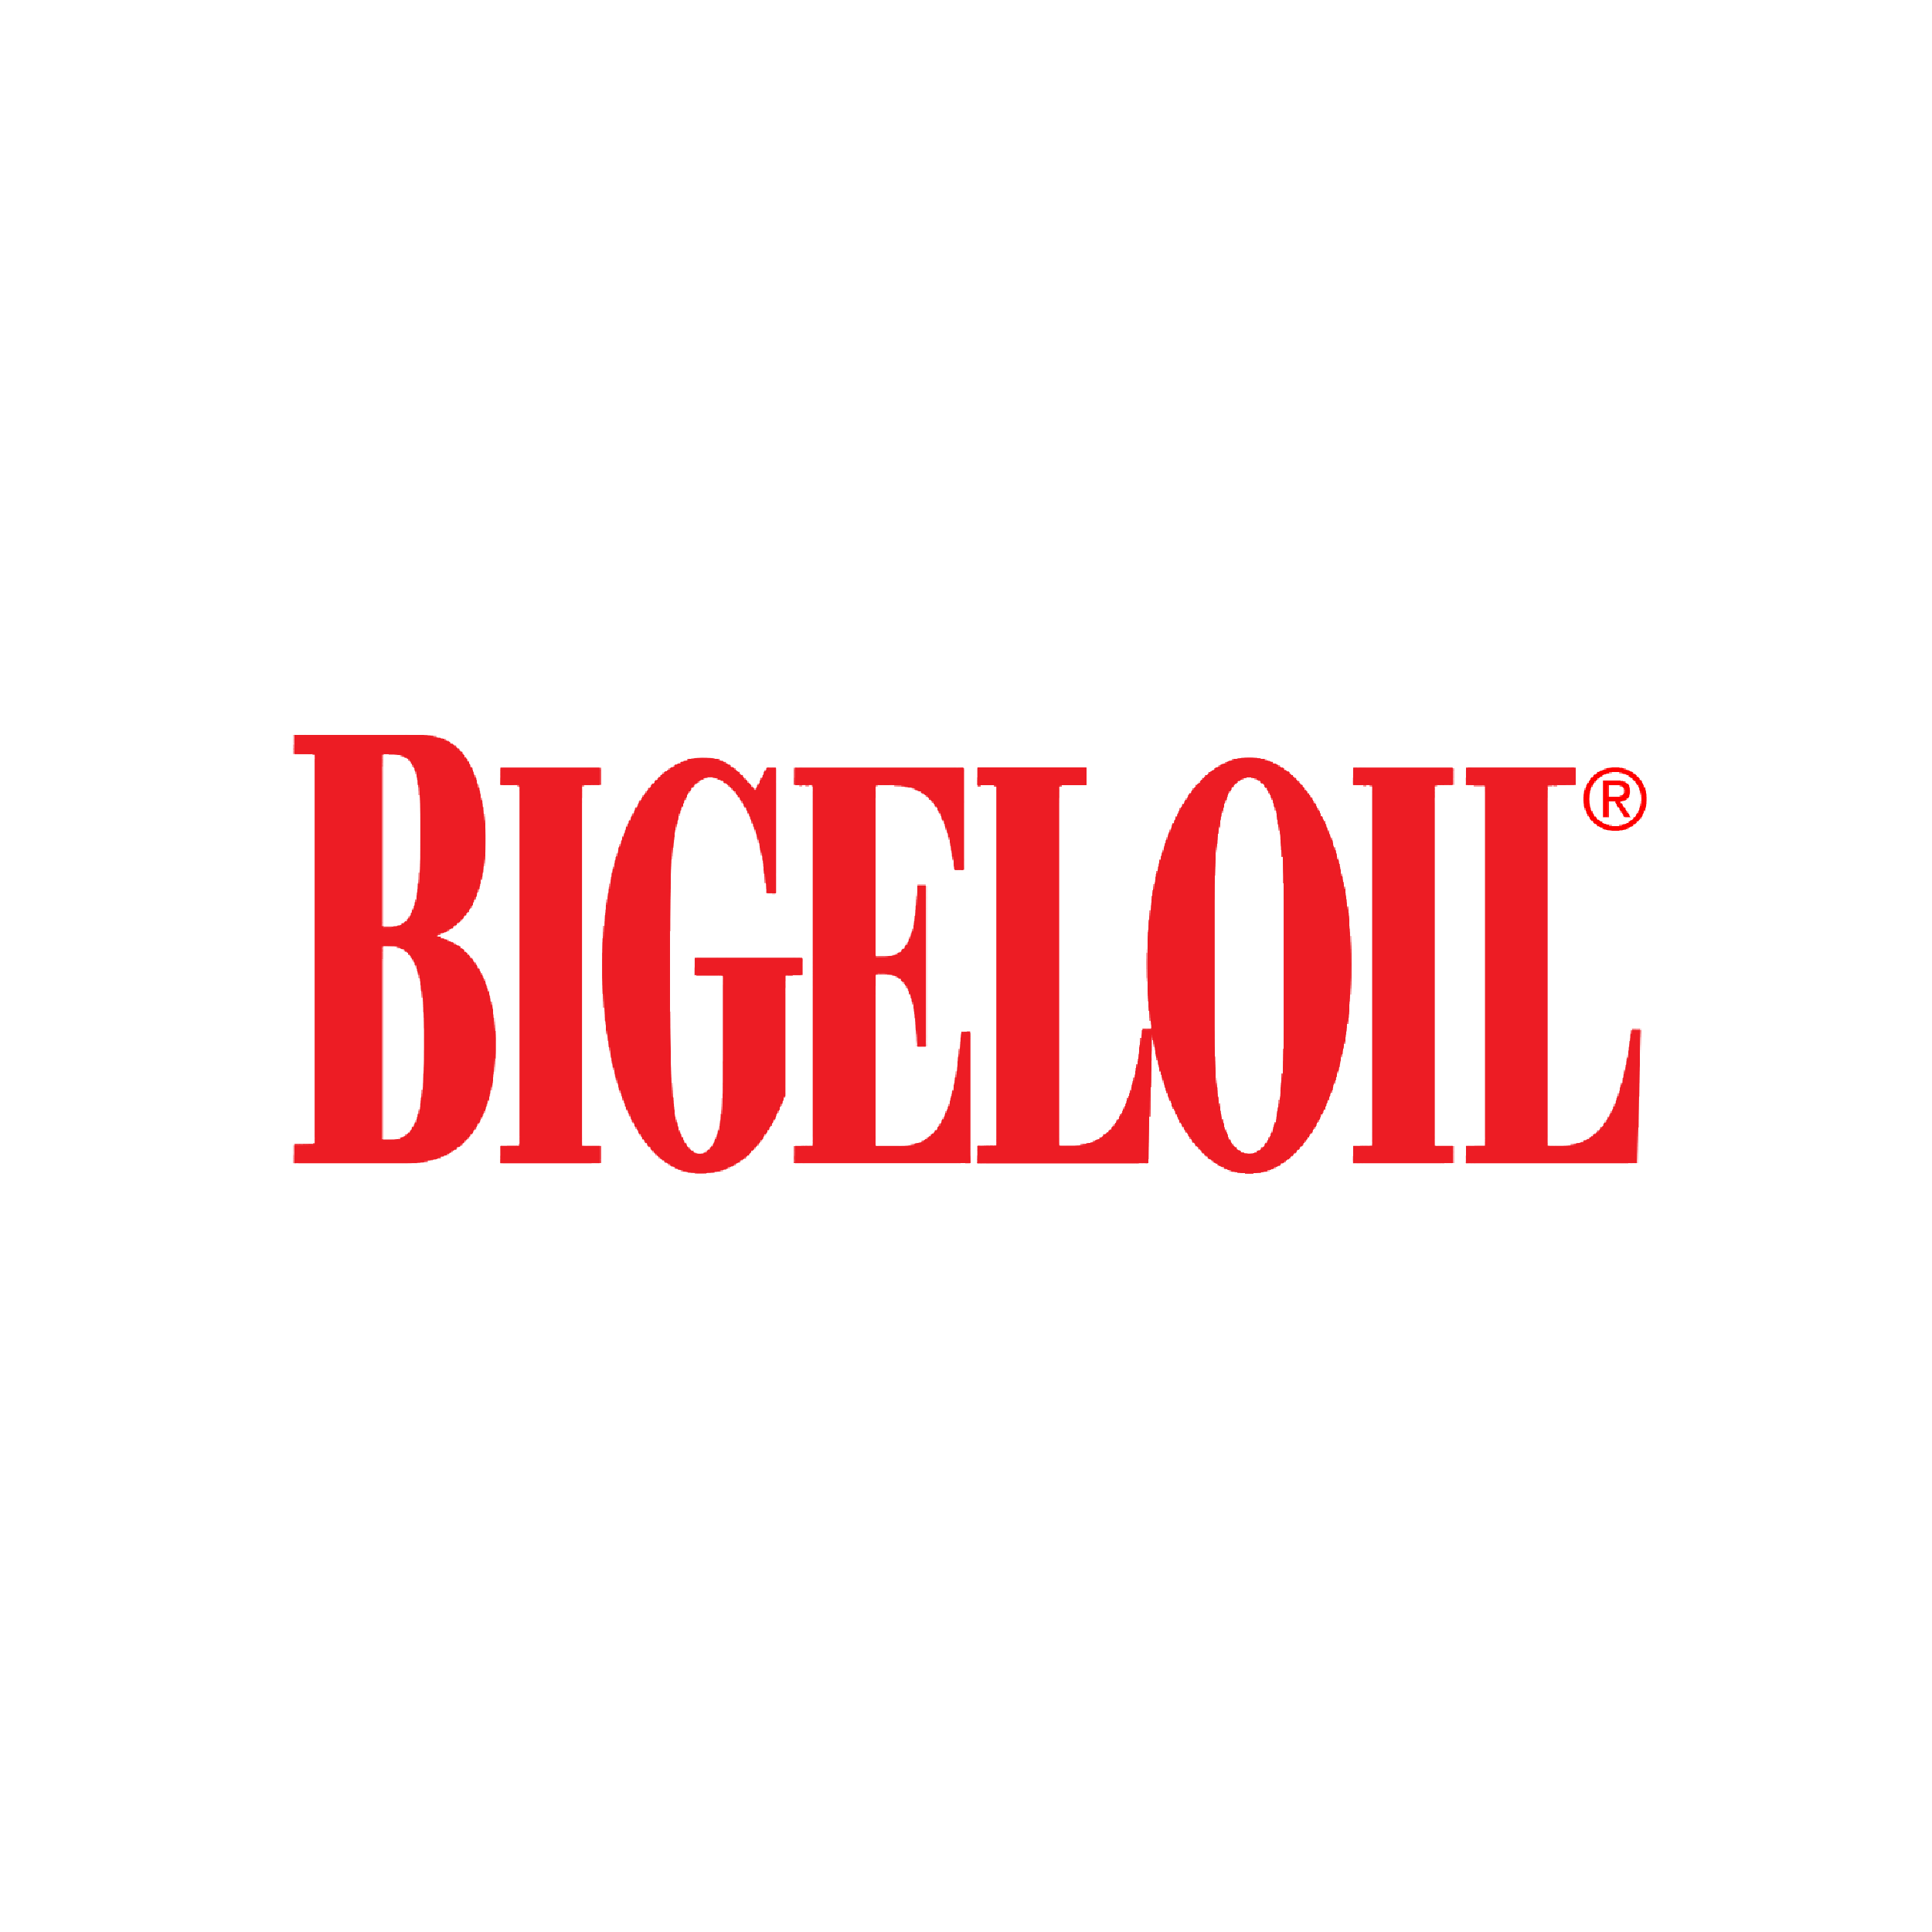 Bigeloil